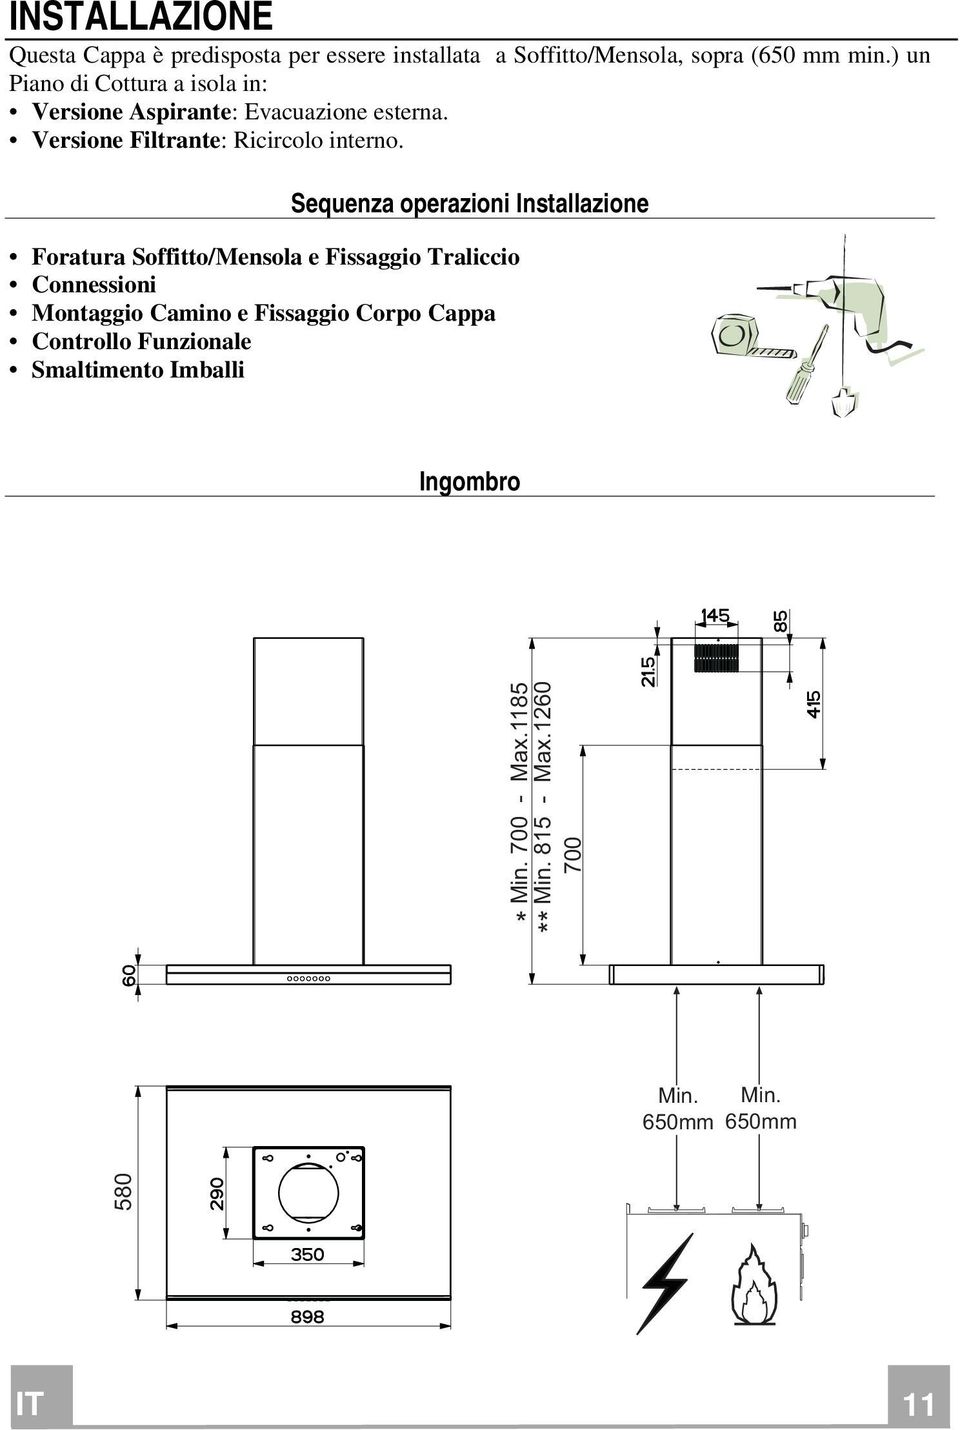 Sequenza operazioni Installazione Foratura Soffitto/Mensola e Fissaggio Traliccio Connessioni Montaggio Camino e